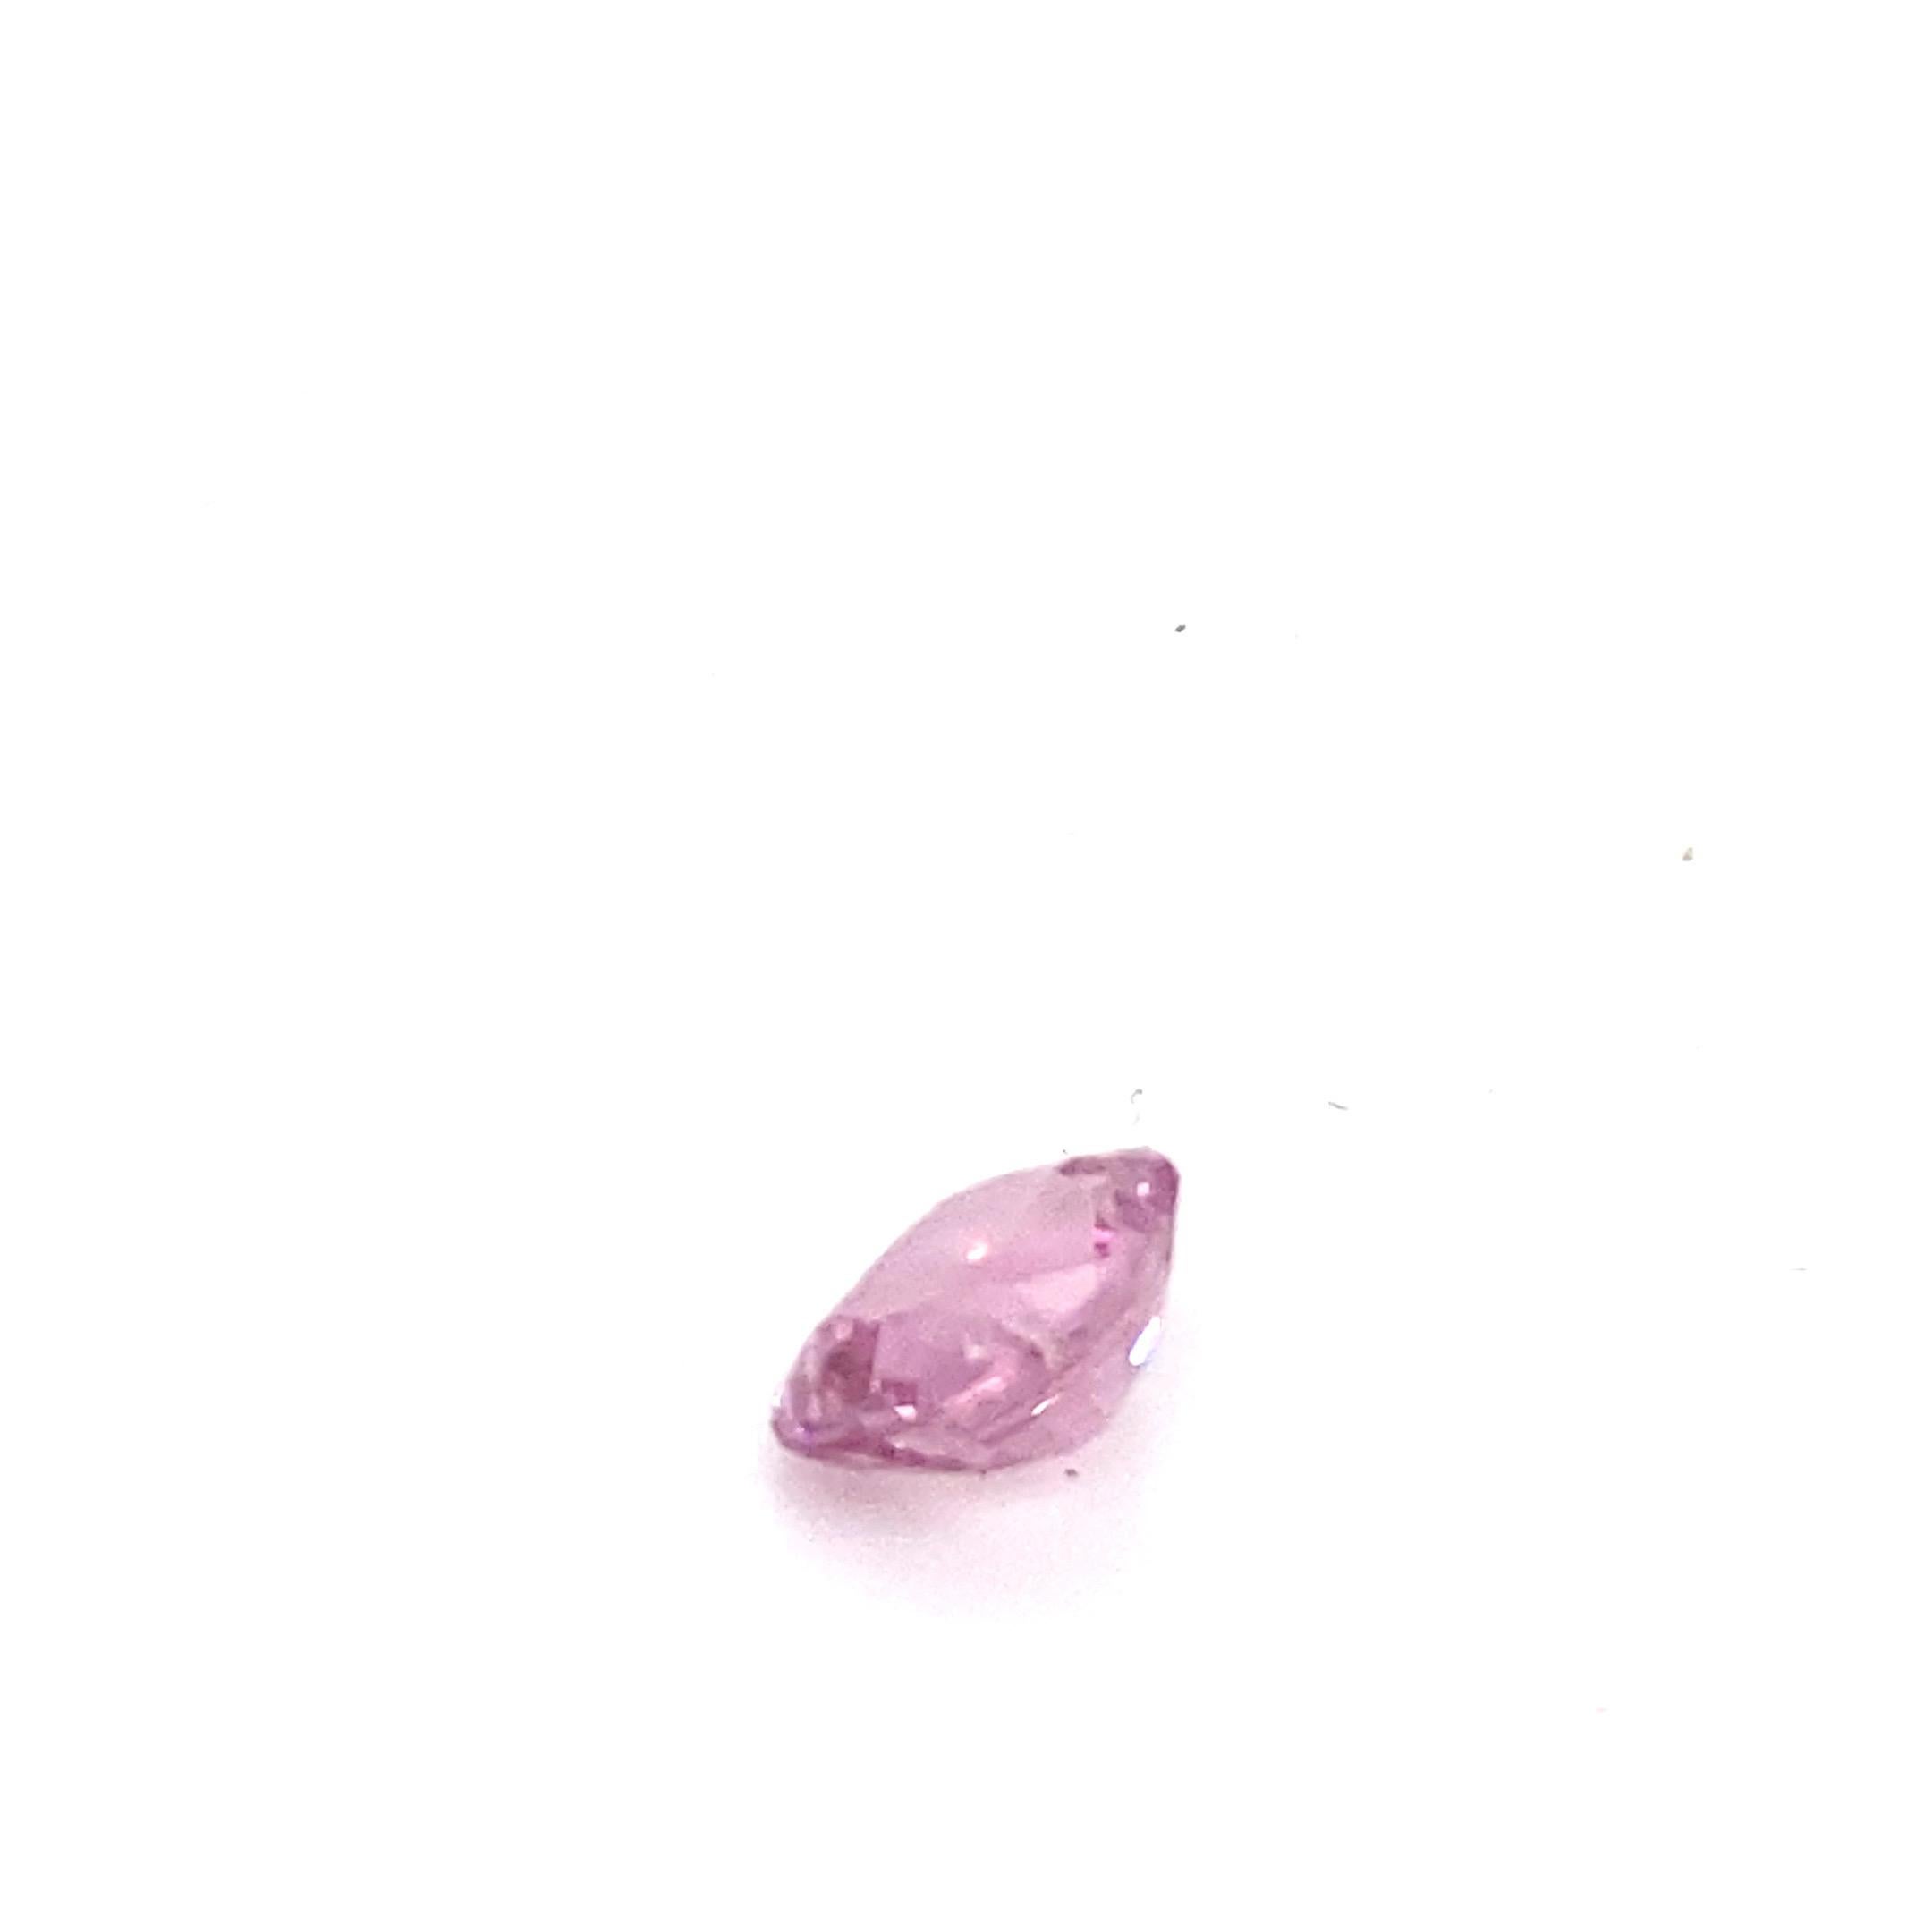 2.0 Carat Oval Shape Natural Pink Spinel Loose Gemstone For Sale 13